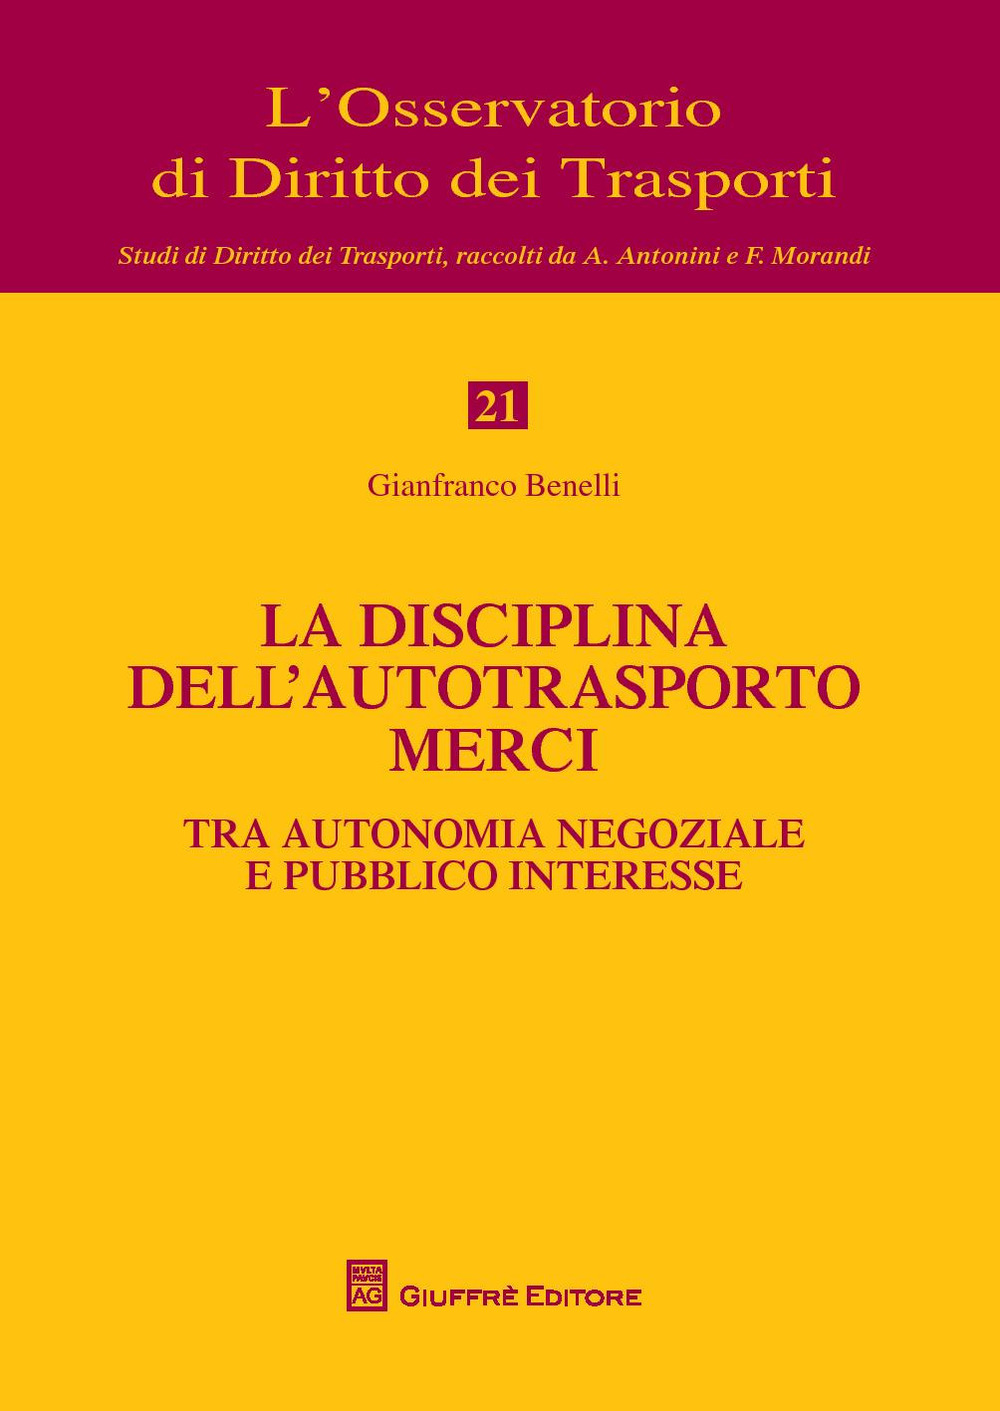 La disciplina dell'autotrasporto merci tra autonomia negoziale e pubblico interesse